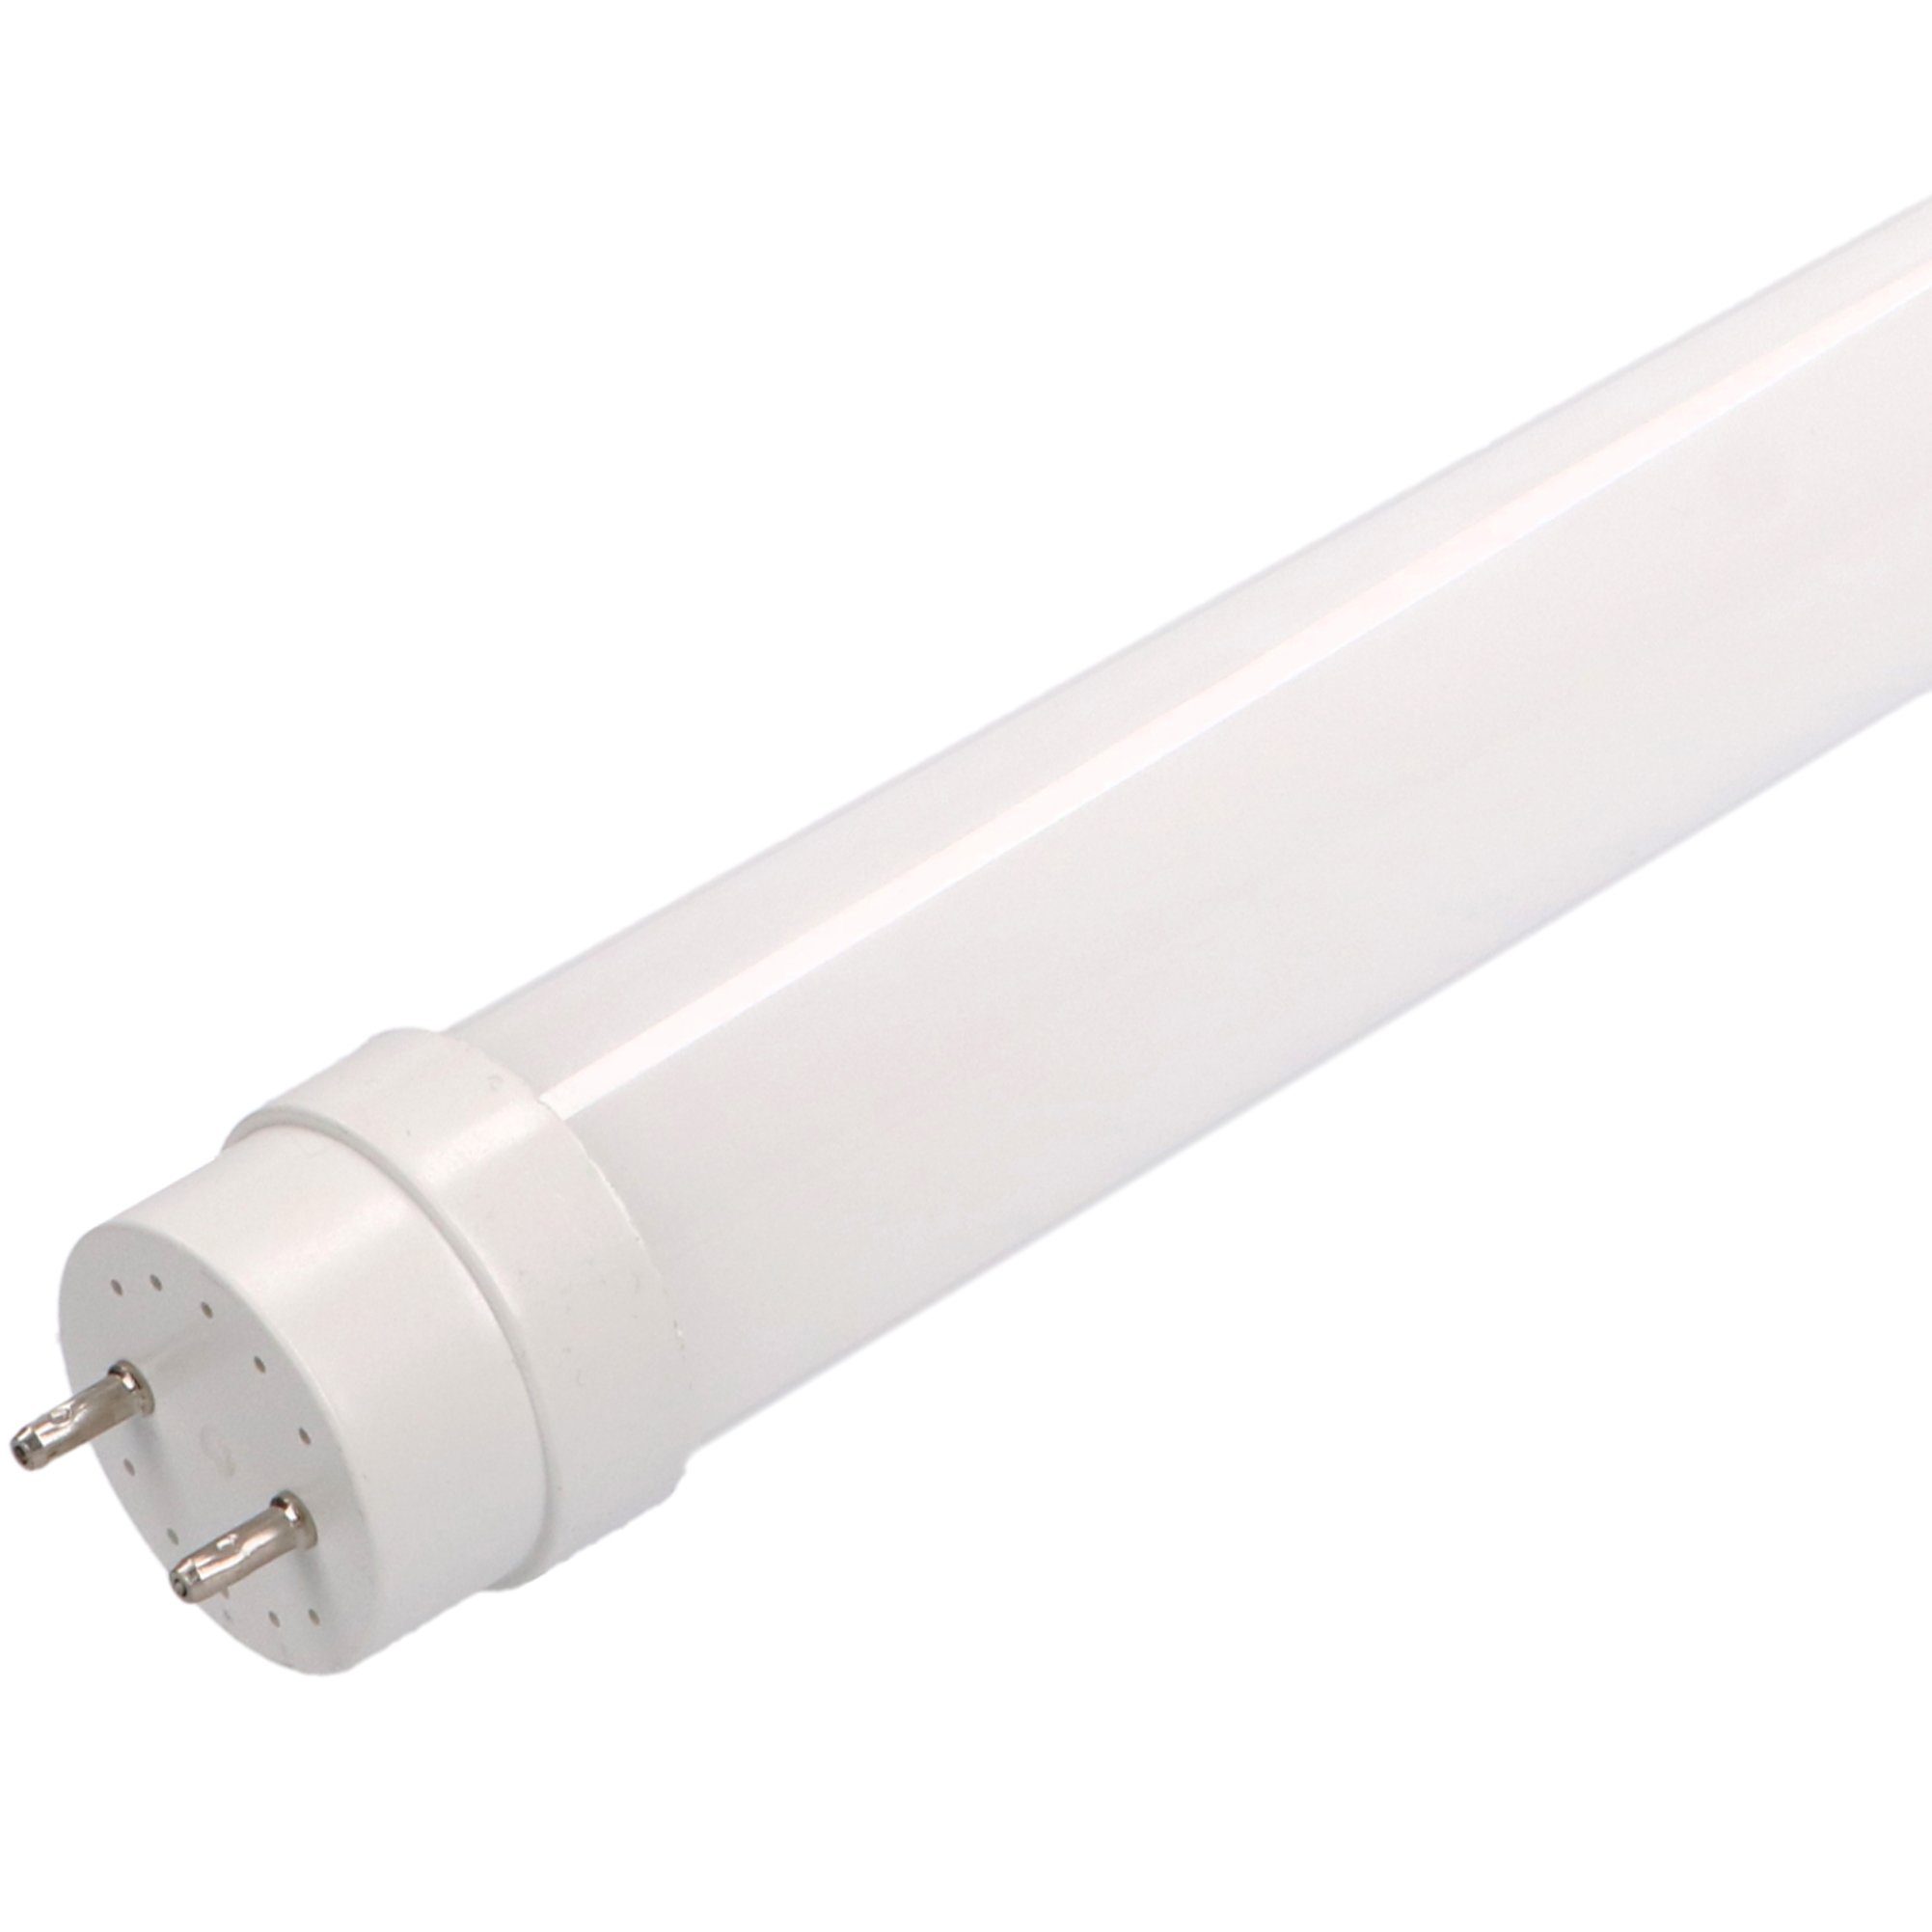 LED's light Basic LED-Leuchtmittel 0610728 LED-Röhre, 120 cm 18 Watt kaltweiß G13 mit Starter für KVG/VVG